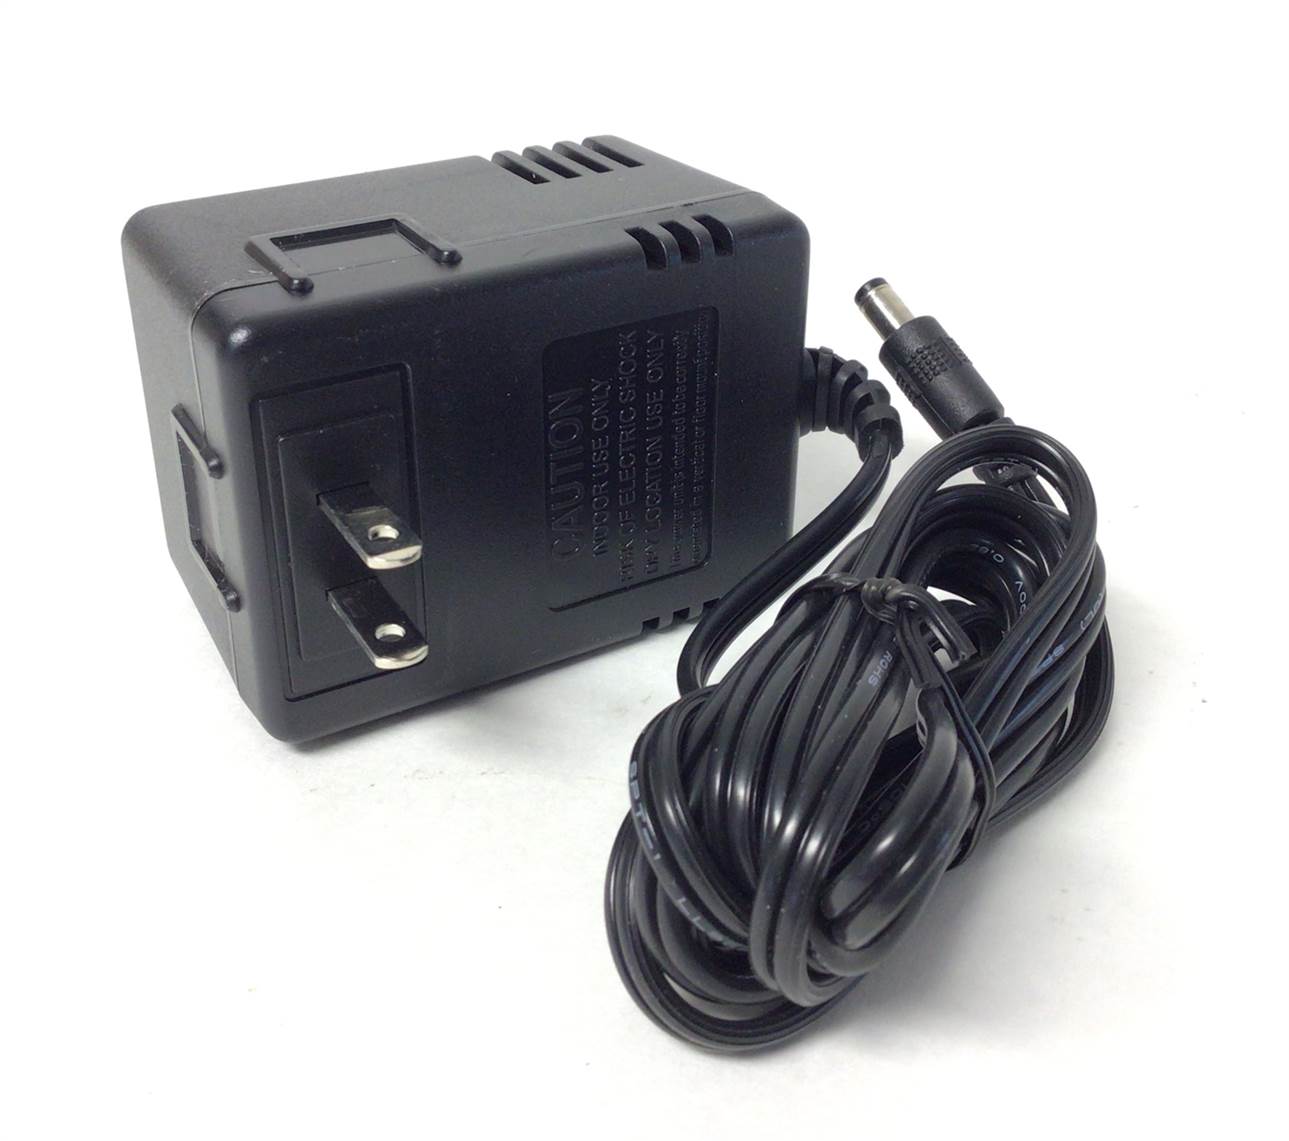 Elliptical power adapter / transformer 1a503601